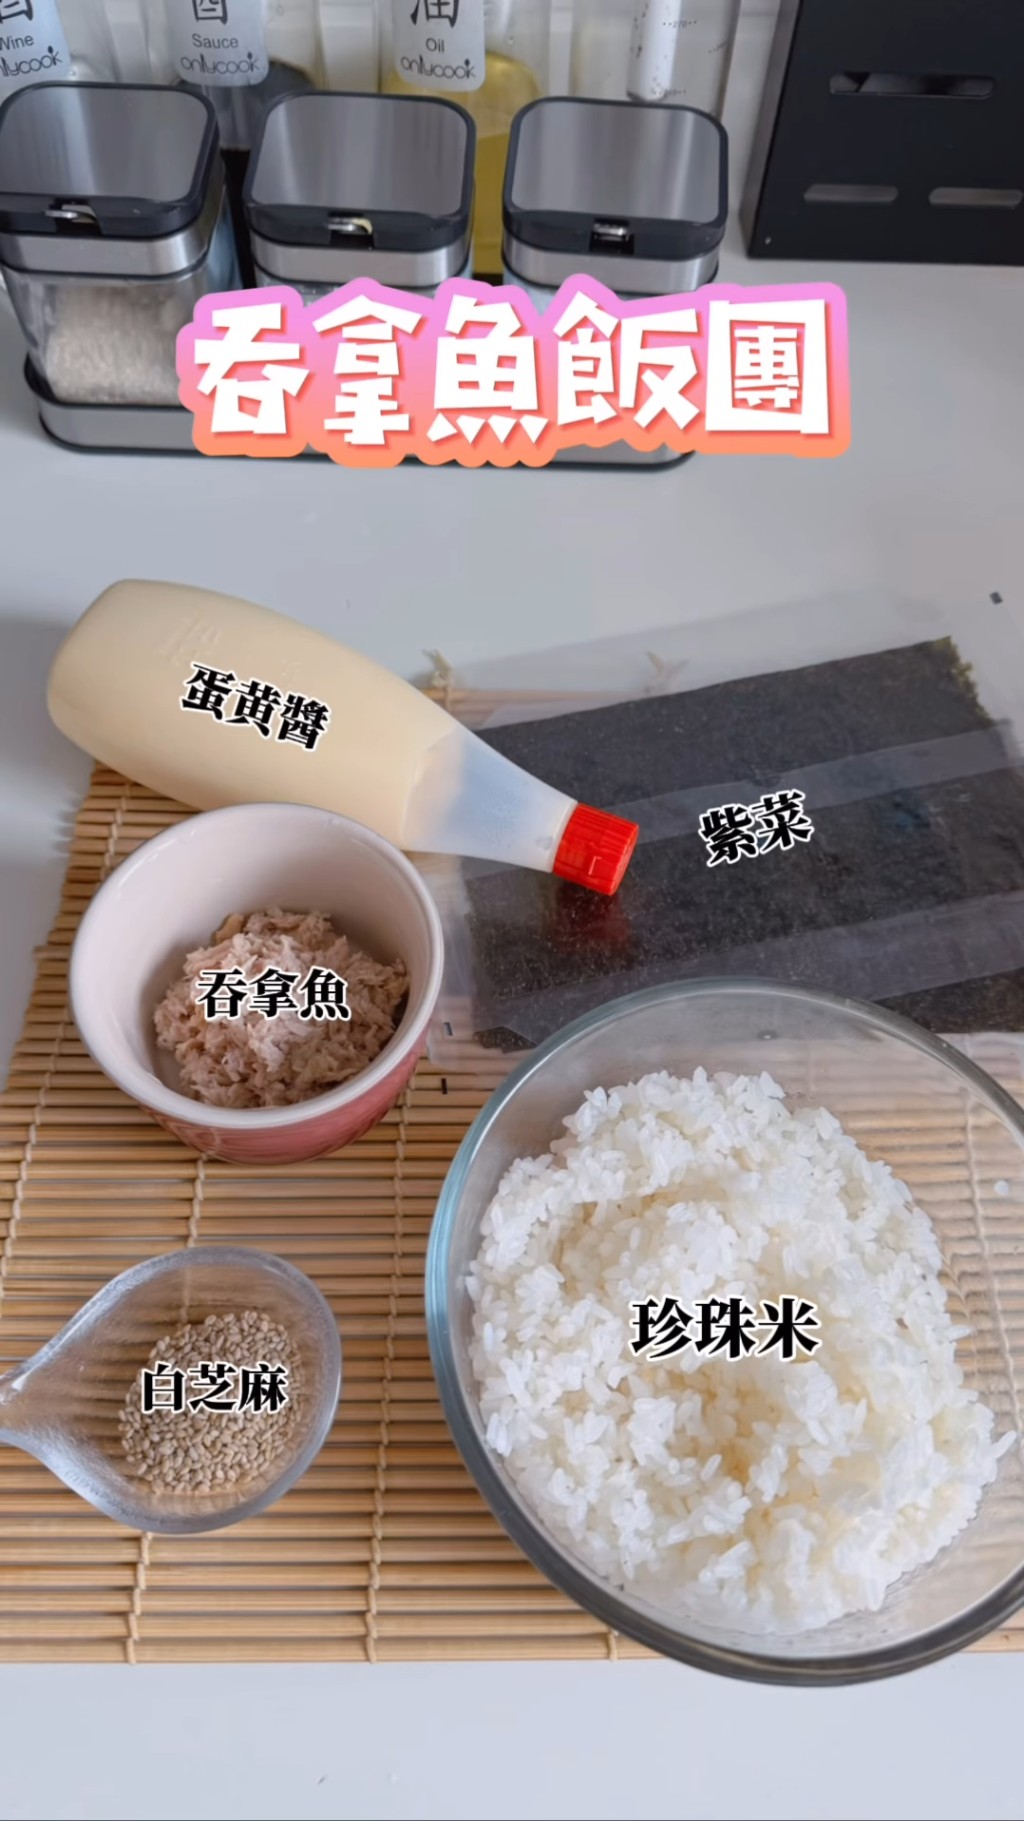 文颂娴昨日（19日）在小红书及IG分享10分钟极速简易做饭团。